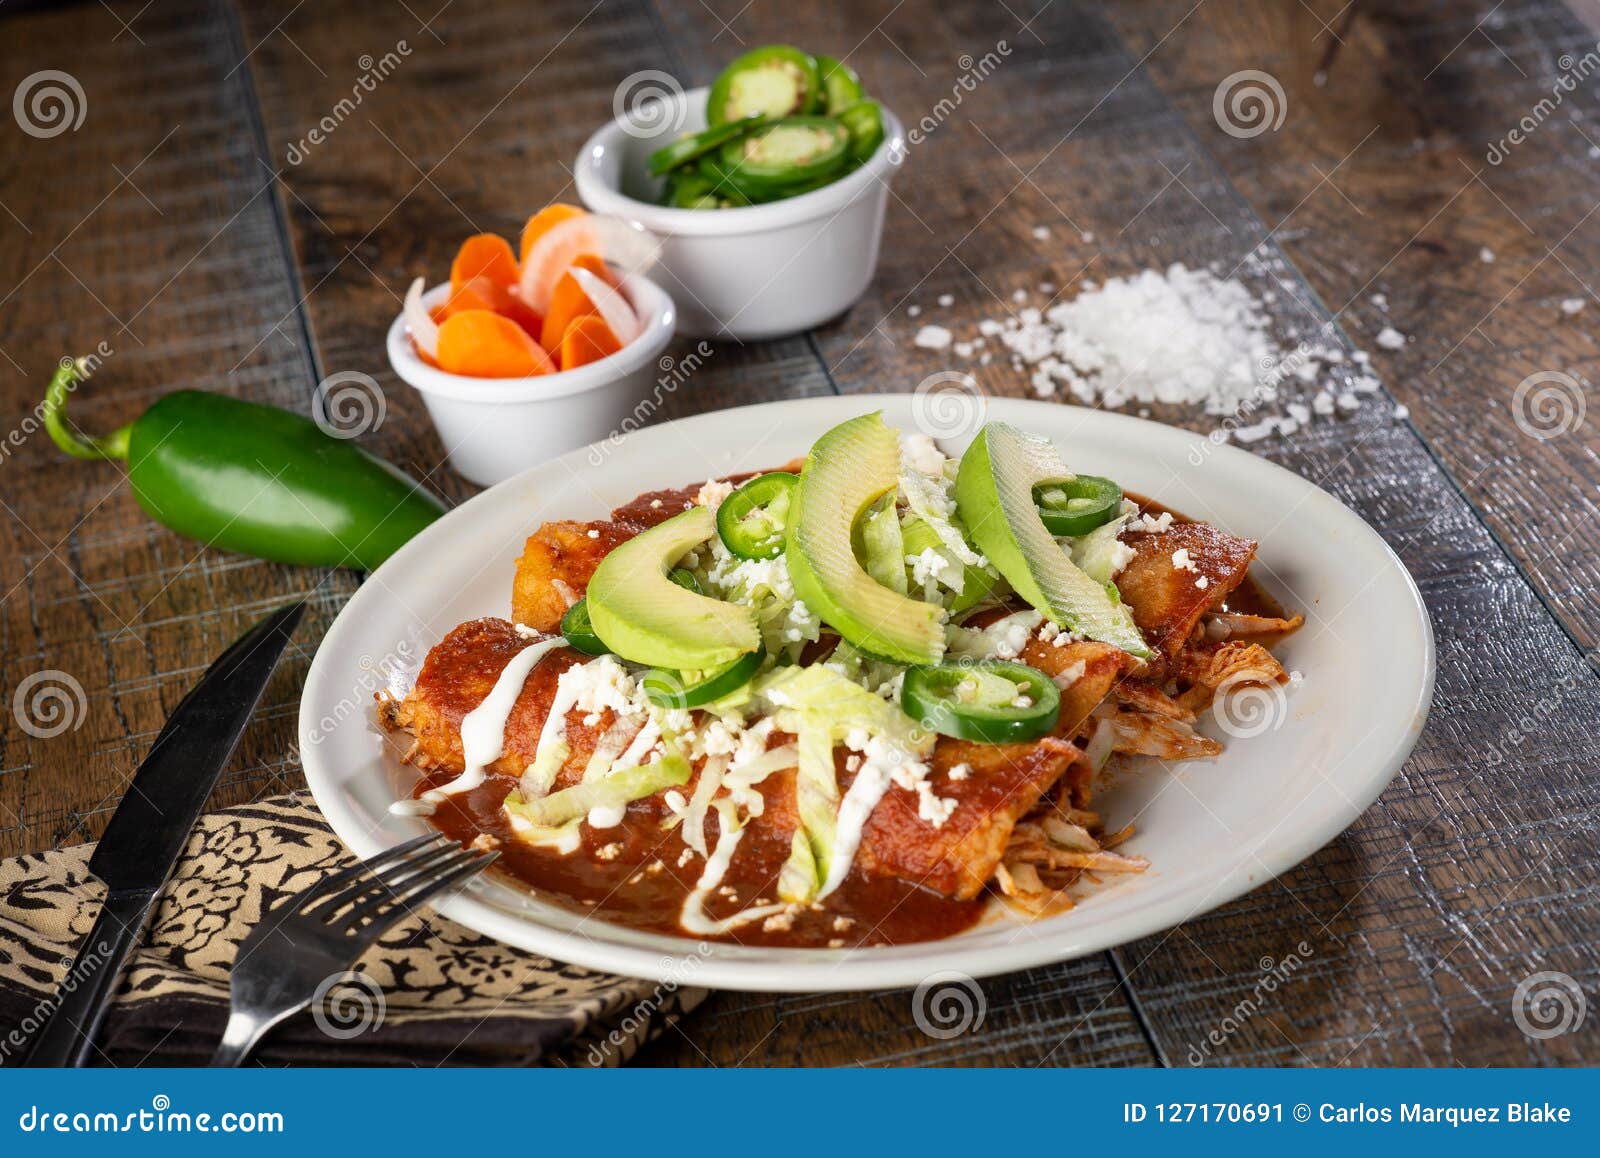 chicken enchiladas on plate